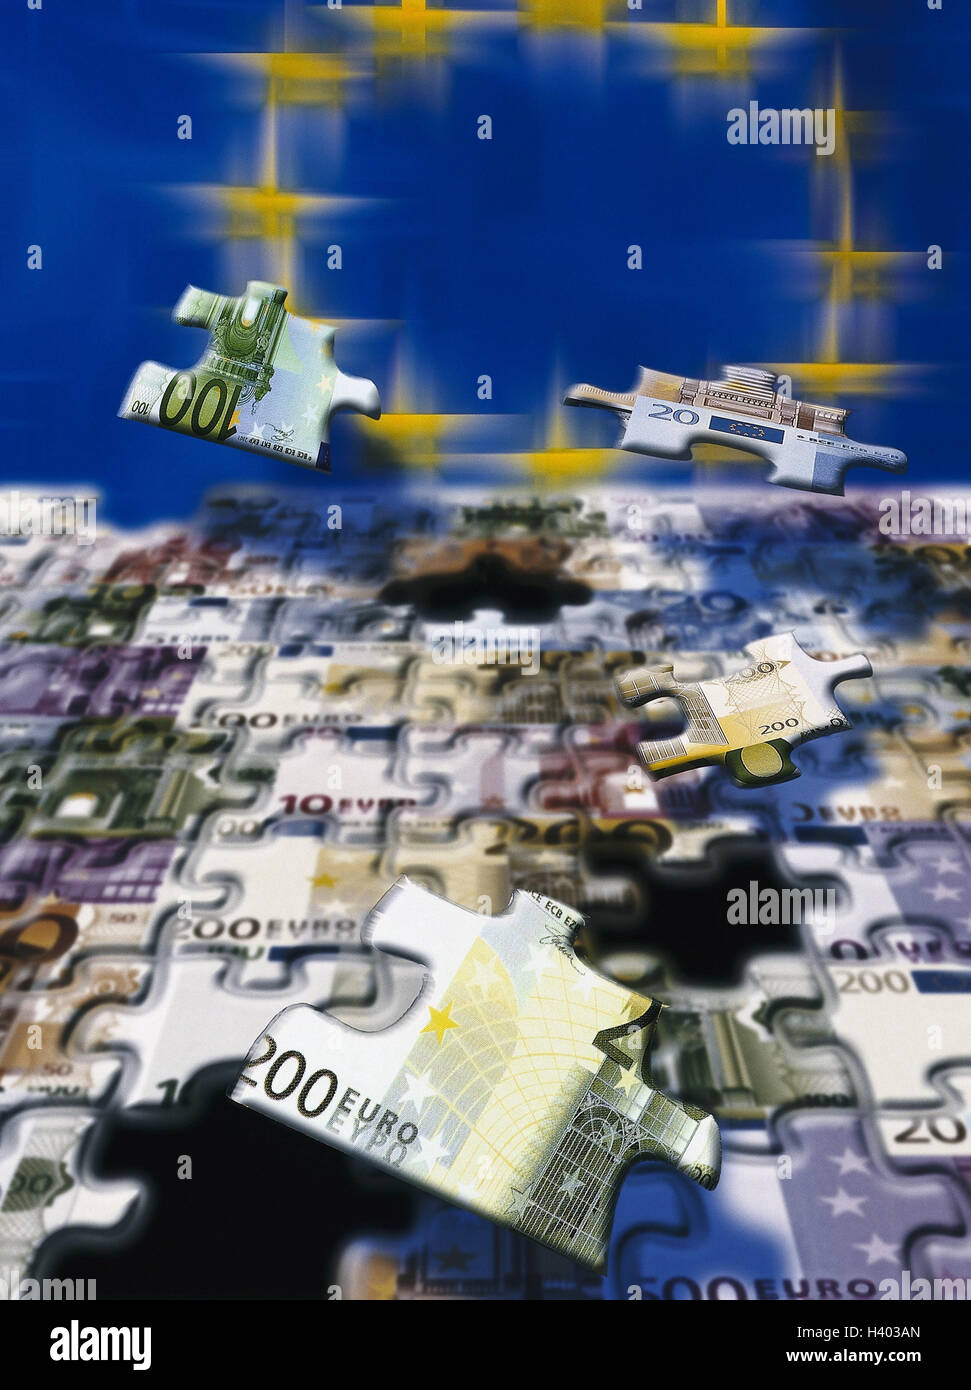 Icon, Europäische Währungsunion, Jigsaw Puzzle, Banknoten, Euro, EU-Sternen, komponieren, EWWU, WWU, der EU, der Europäischen Union, Währung, Einheitswährung, Währungssystem, beitreten Stockfoto